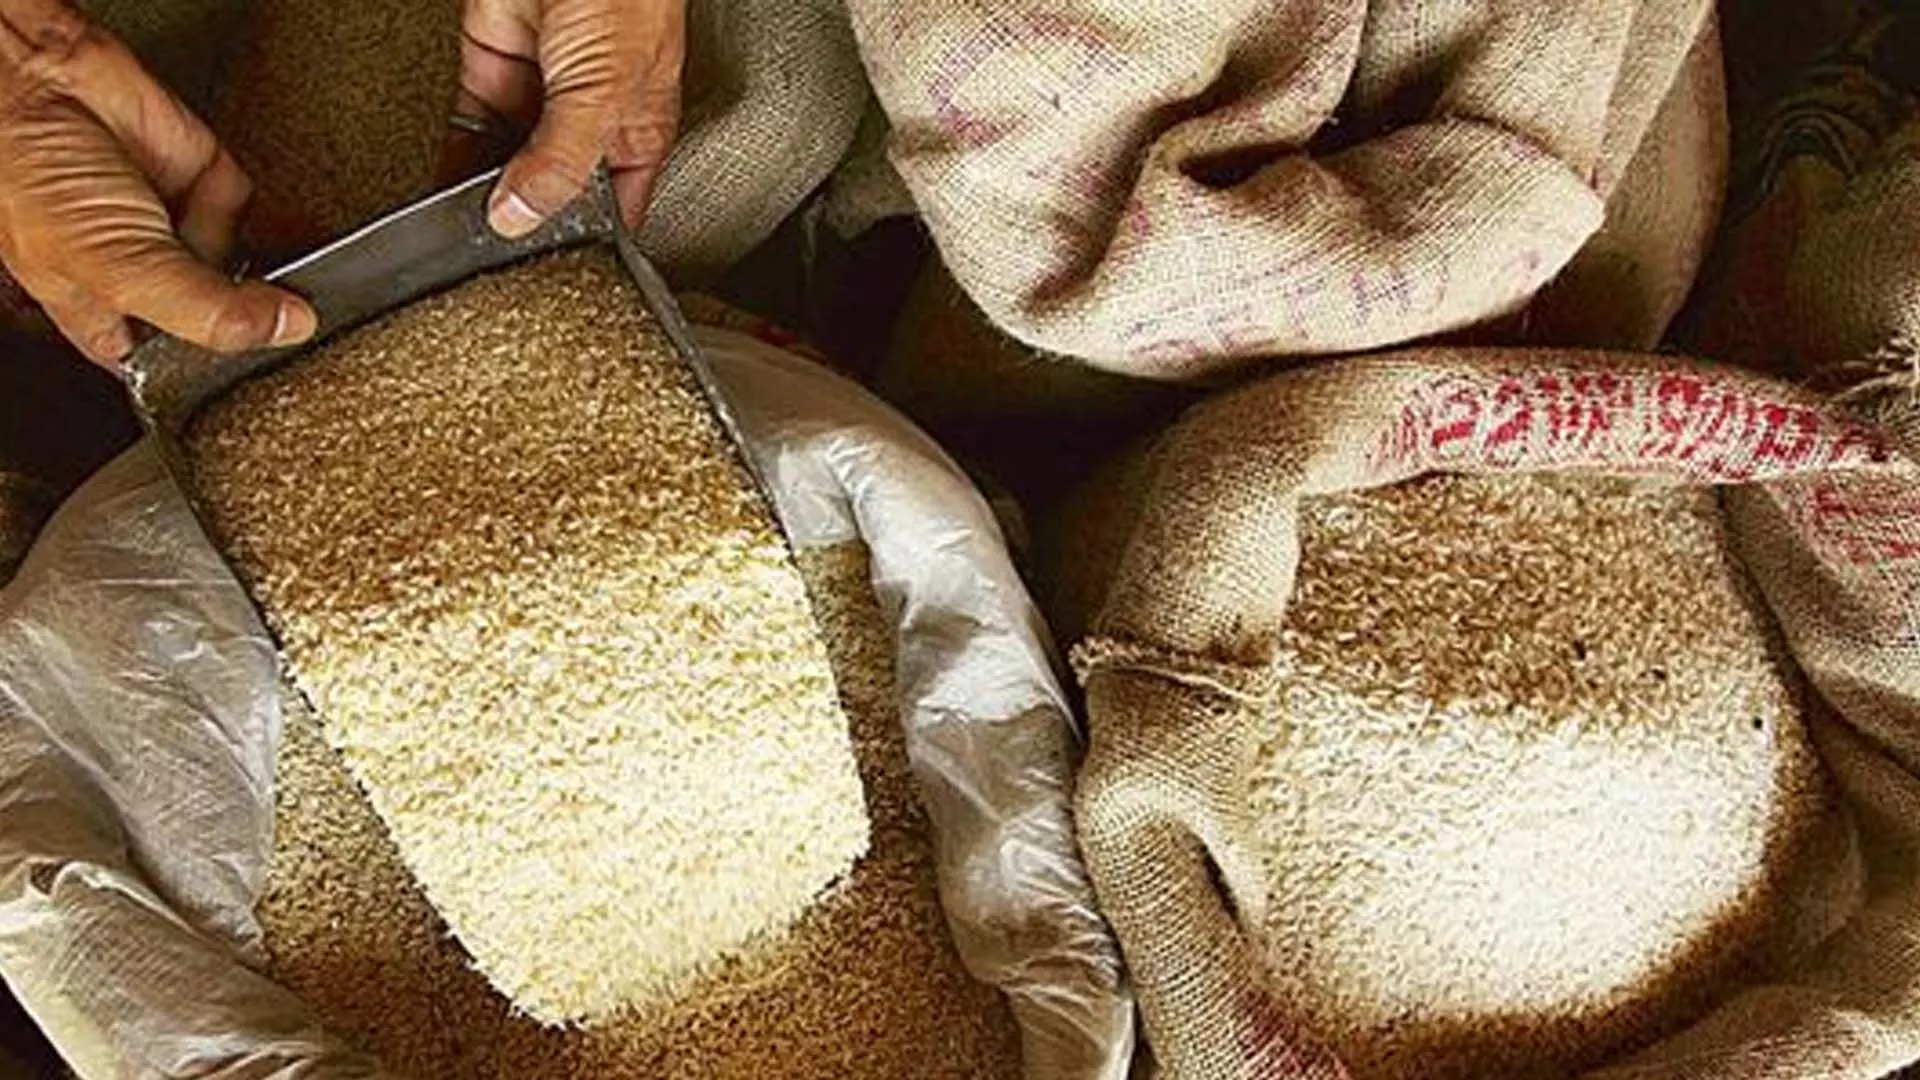 भारत अब खाद्य मुद्रास्फीति संकट के बीच गैर-बासमती चावल निर्यात में टूटे प्रतिशत को कम करने की योजना बना रहा है